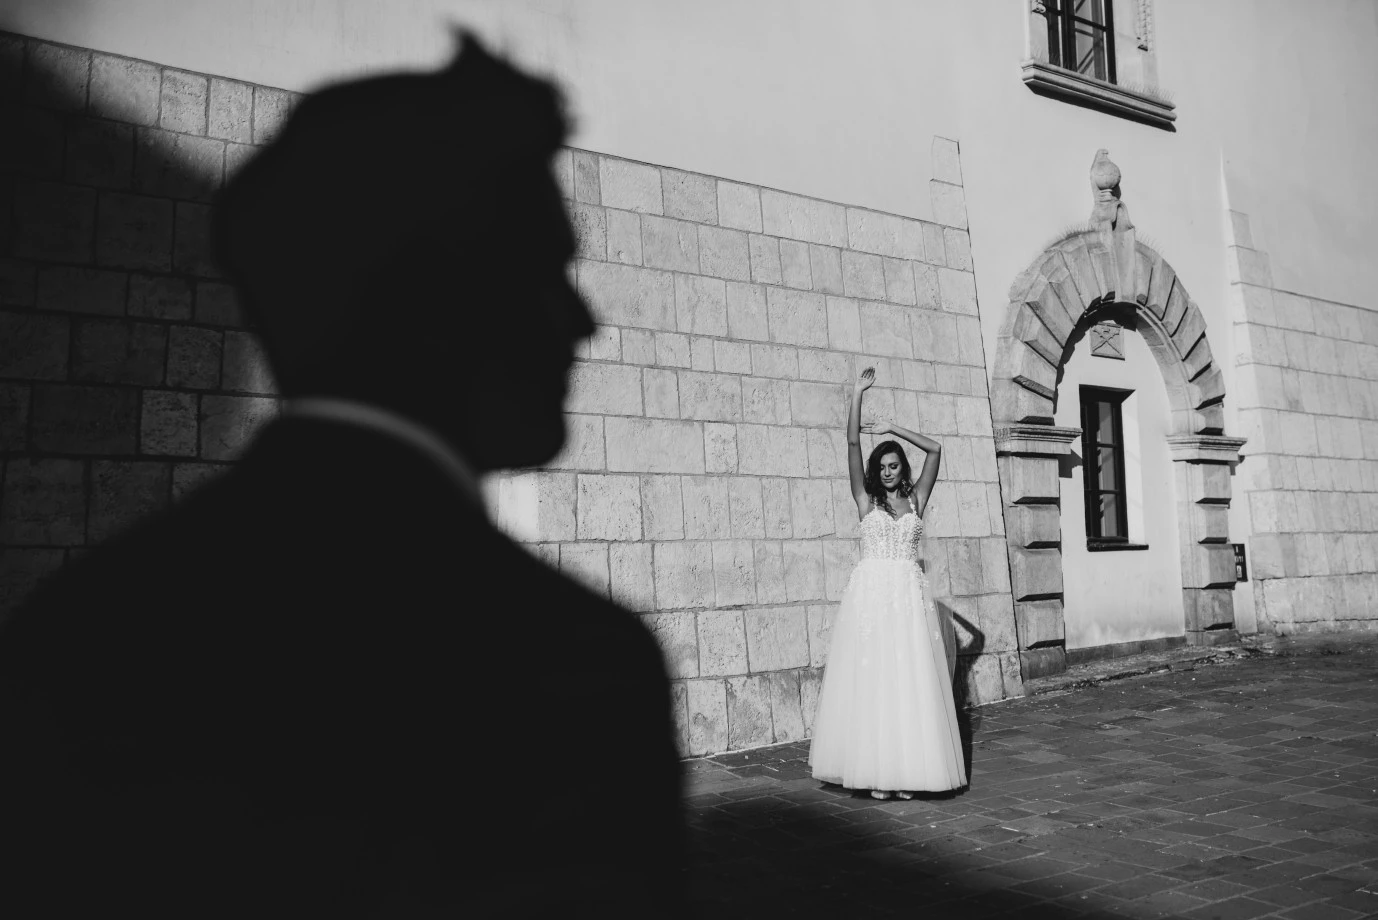 zdjęcia koniecpol fotograf slawomir-berski portfolio zdjecia slubne inspiracje wesele plener slubny sesja slubna